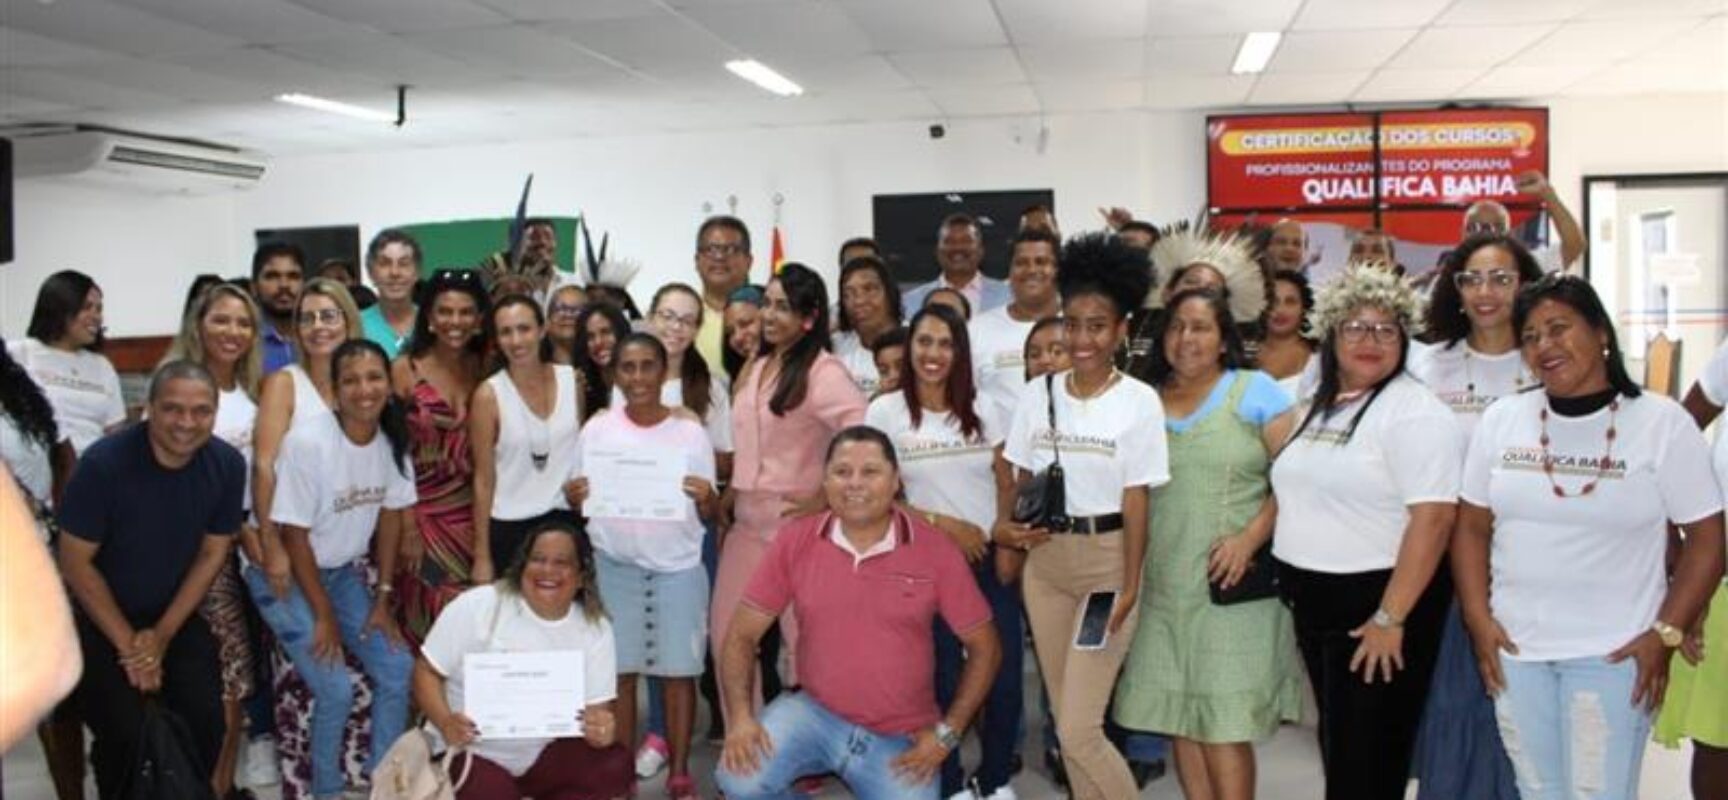 Programa Qualifica Bahia entrega certificados para alunos em cerimônia na Câmara de Ilhéus